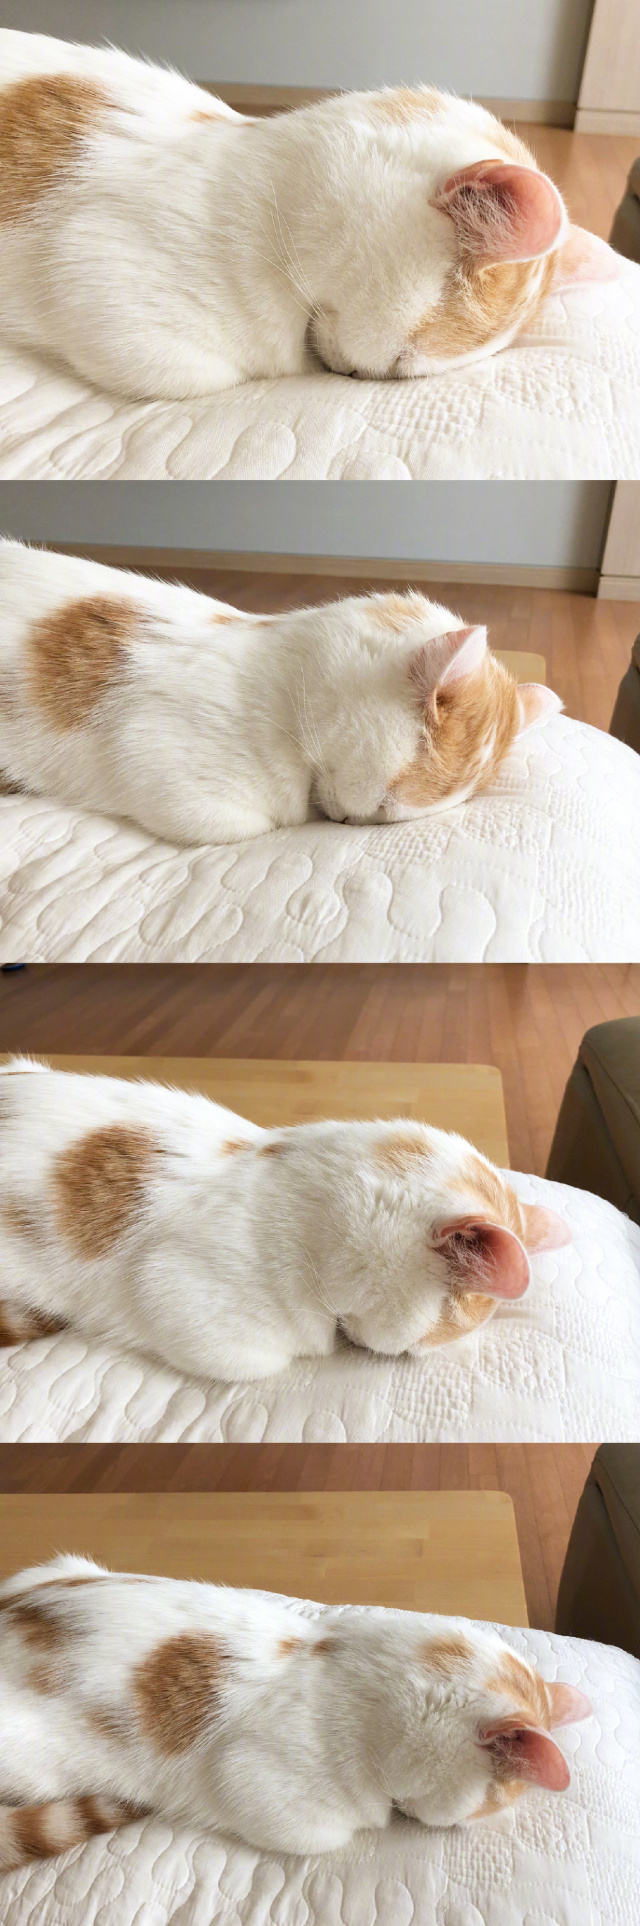 小懒猫的贪睡日常